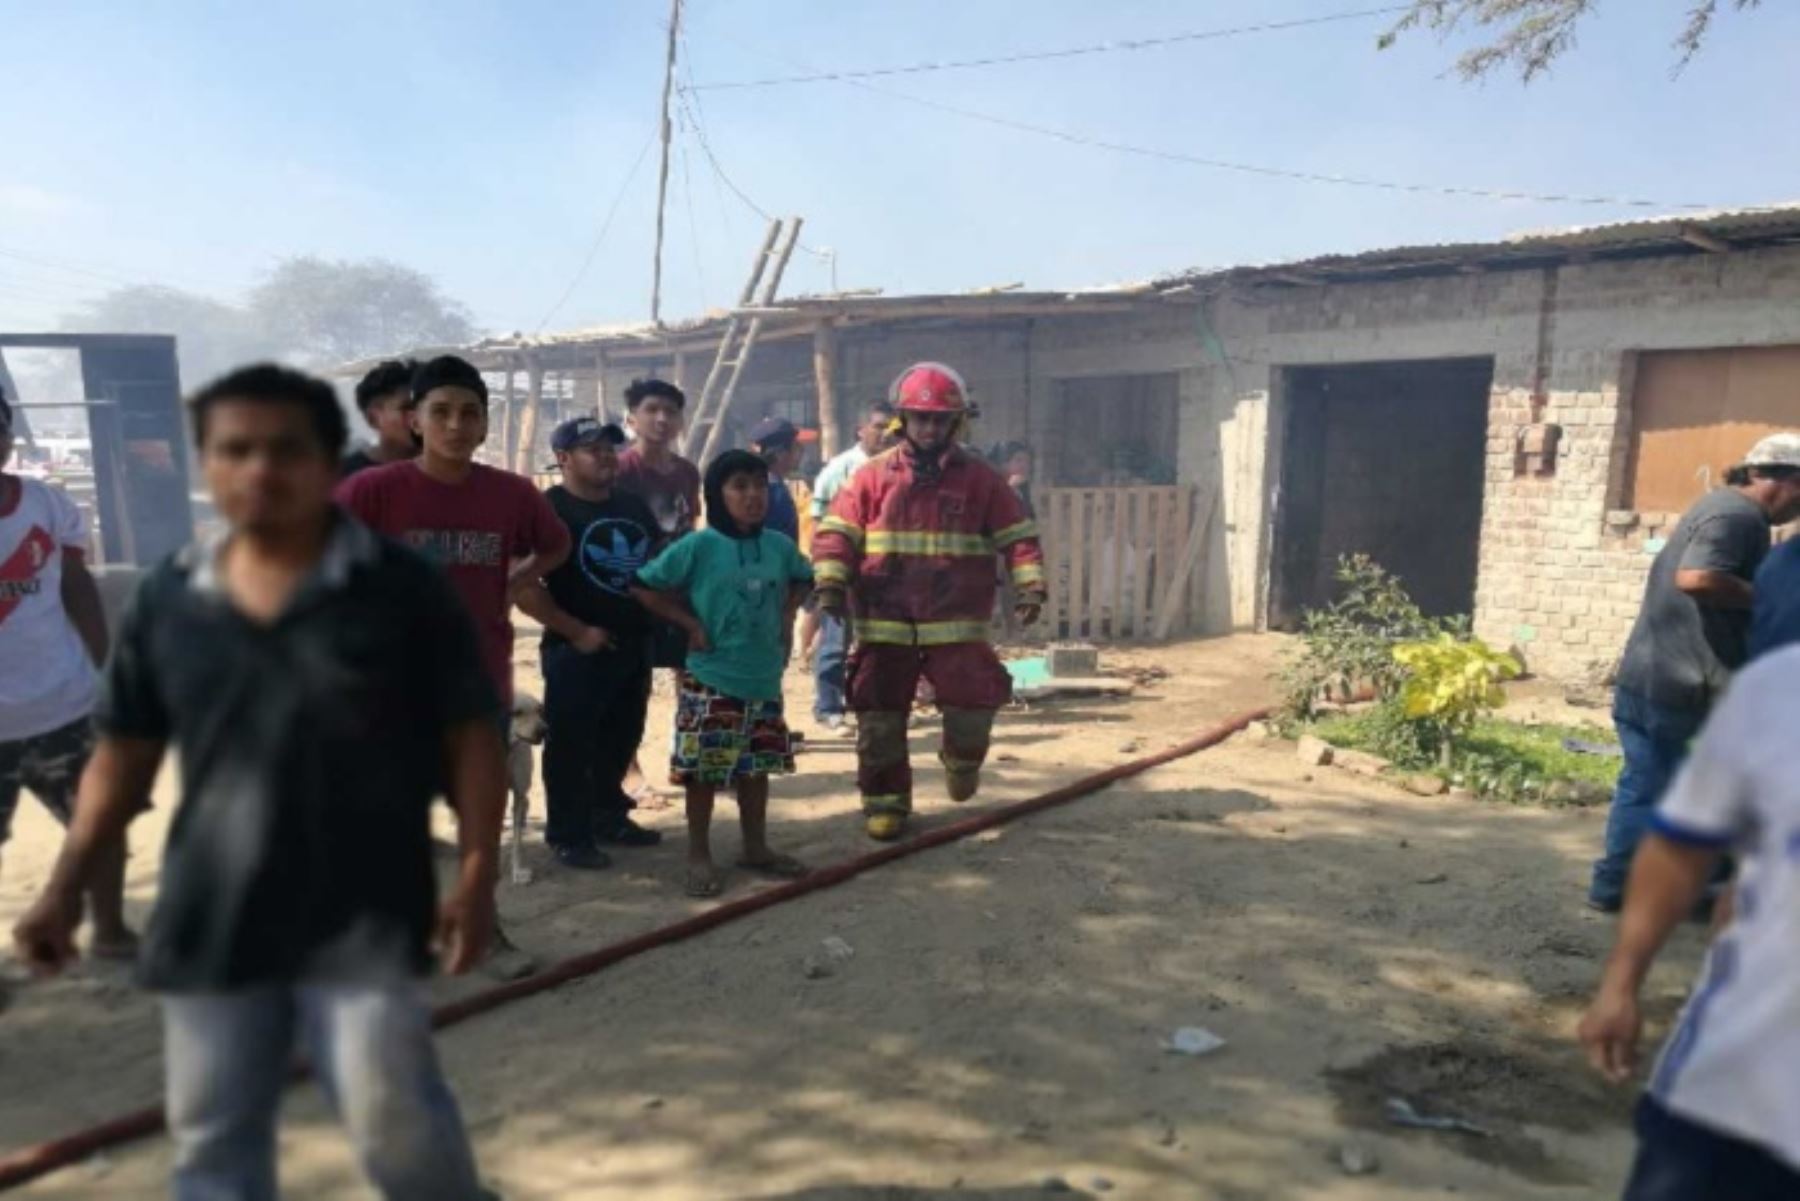 Un total de 14 viviendas de material rústico fueron afectadas por un dantesco incendio ocurrido en la víspera en el asentamiento humano Victorino Elorz de la provincia de Sullana, dejando alrededor de 70 damnificados, en su mayoría menores de edad.